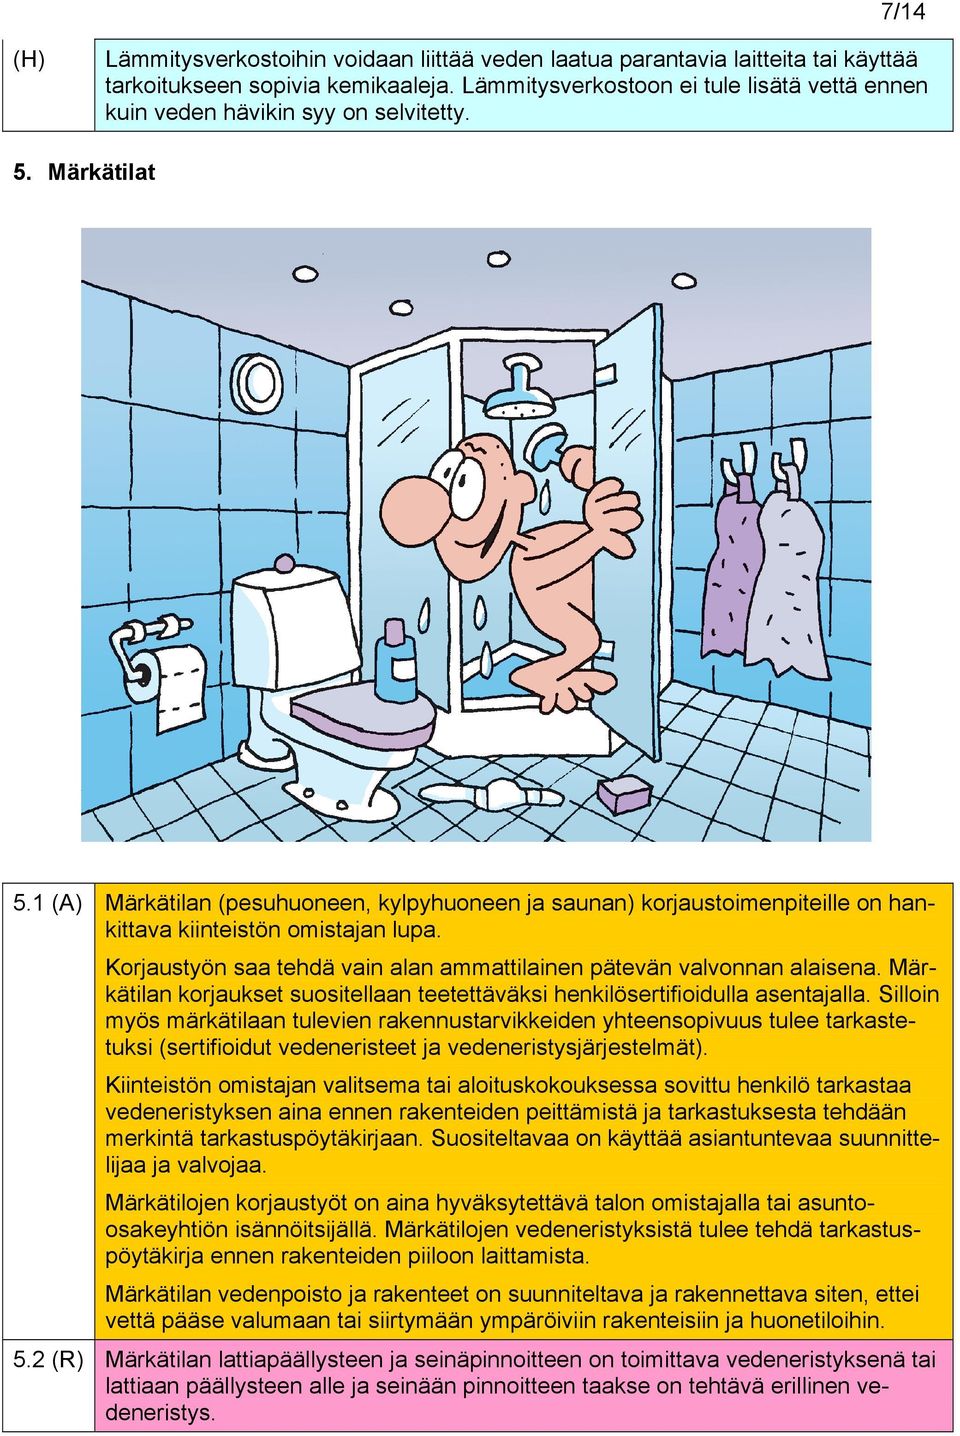 1 Märkätilan (pesuhuoneen, kylpyhuoneen ja saunan) korjaustoimenpiteille on hankittava kiinteistön omistajan lupa. Korjaustyön saa tehdä vain alan ammattilainen pätevän valvonnan alaisena.